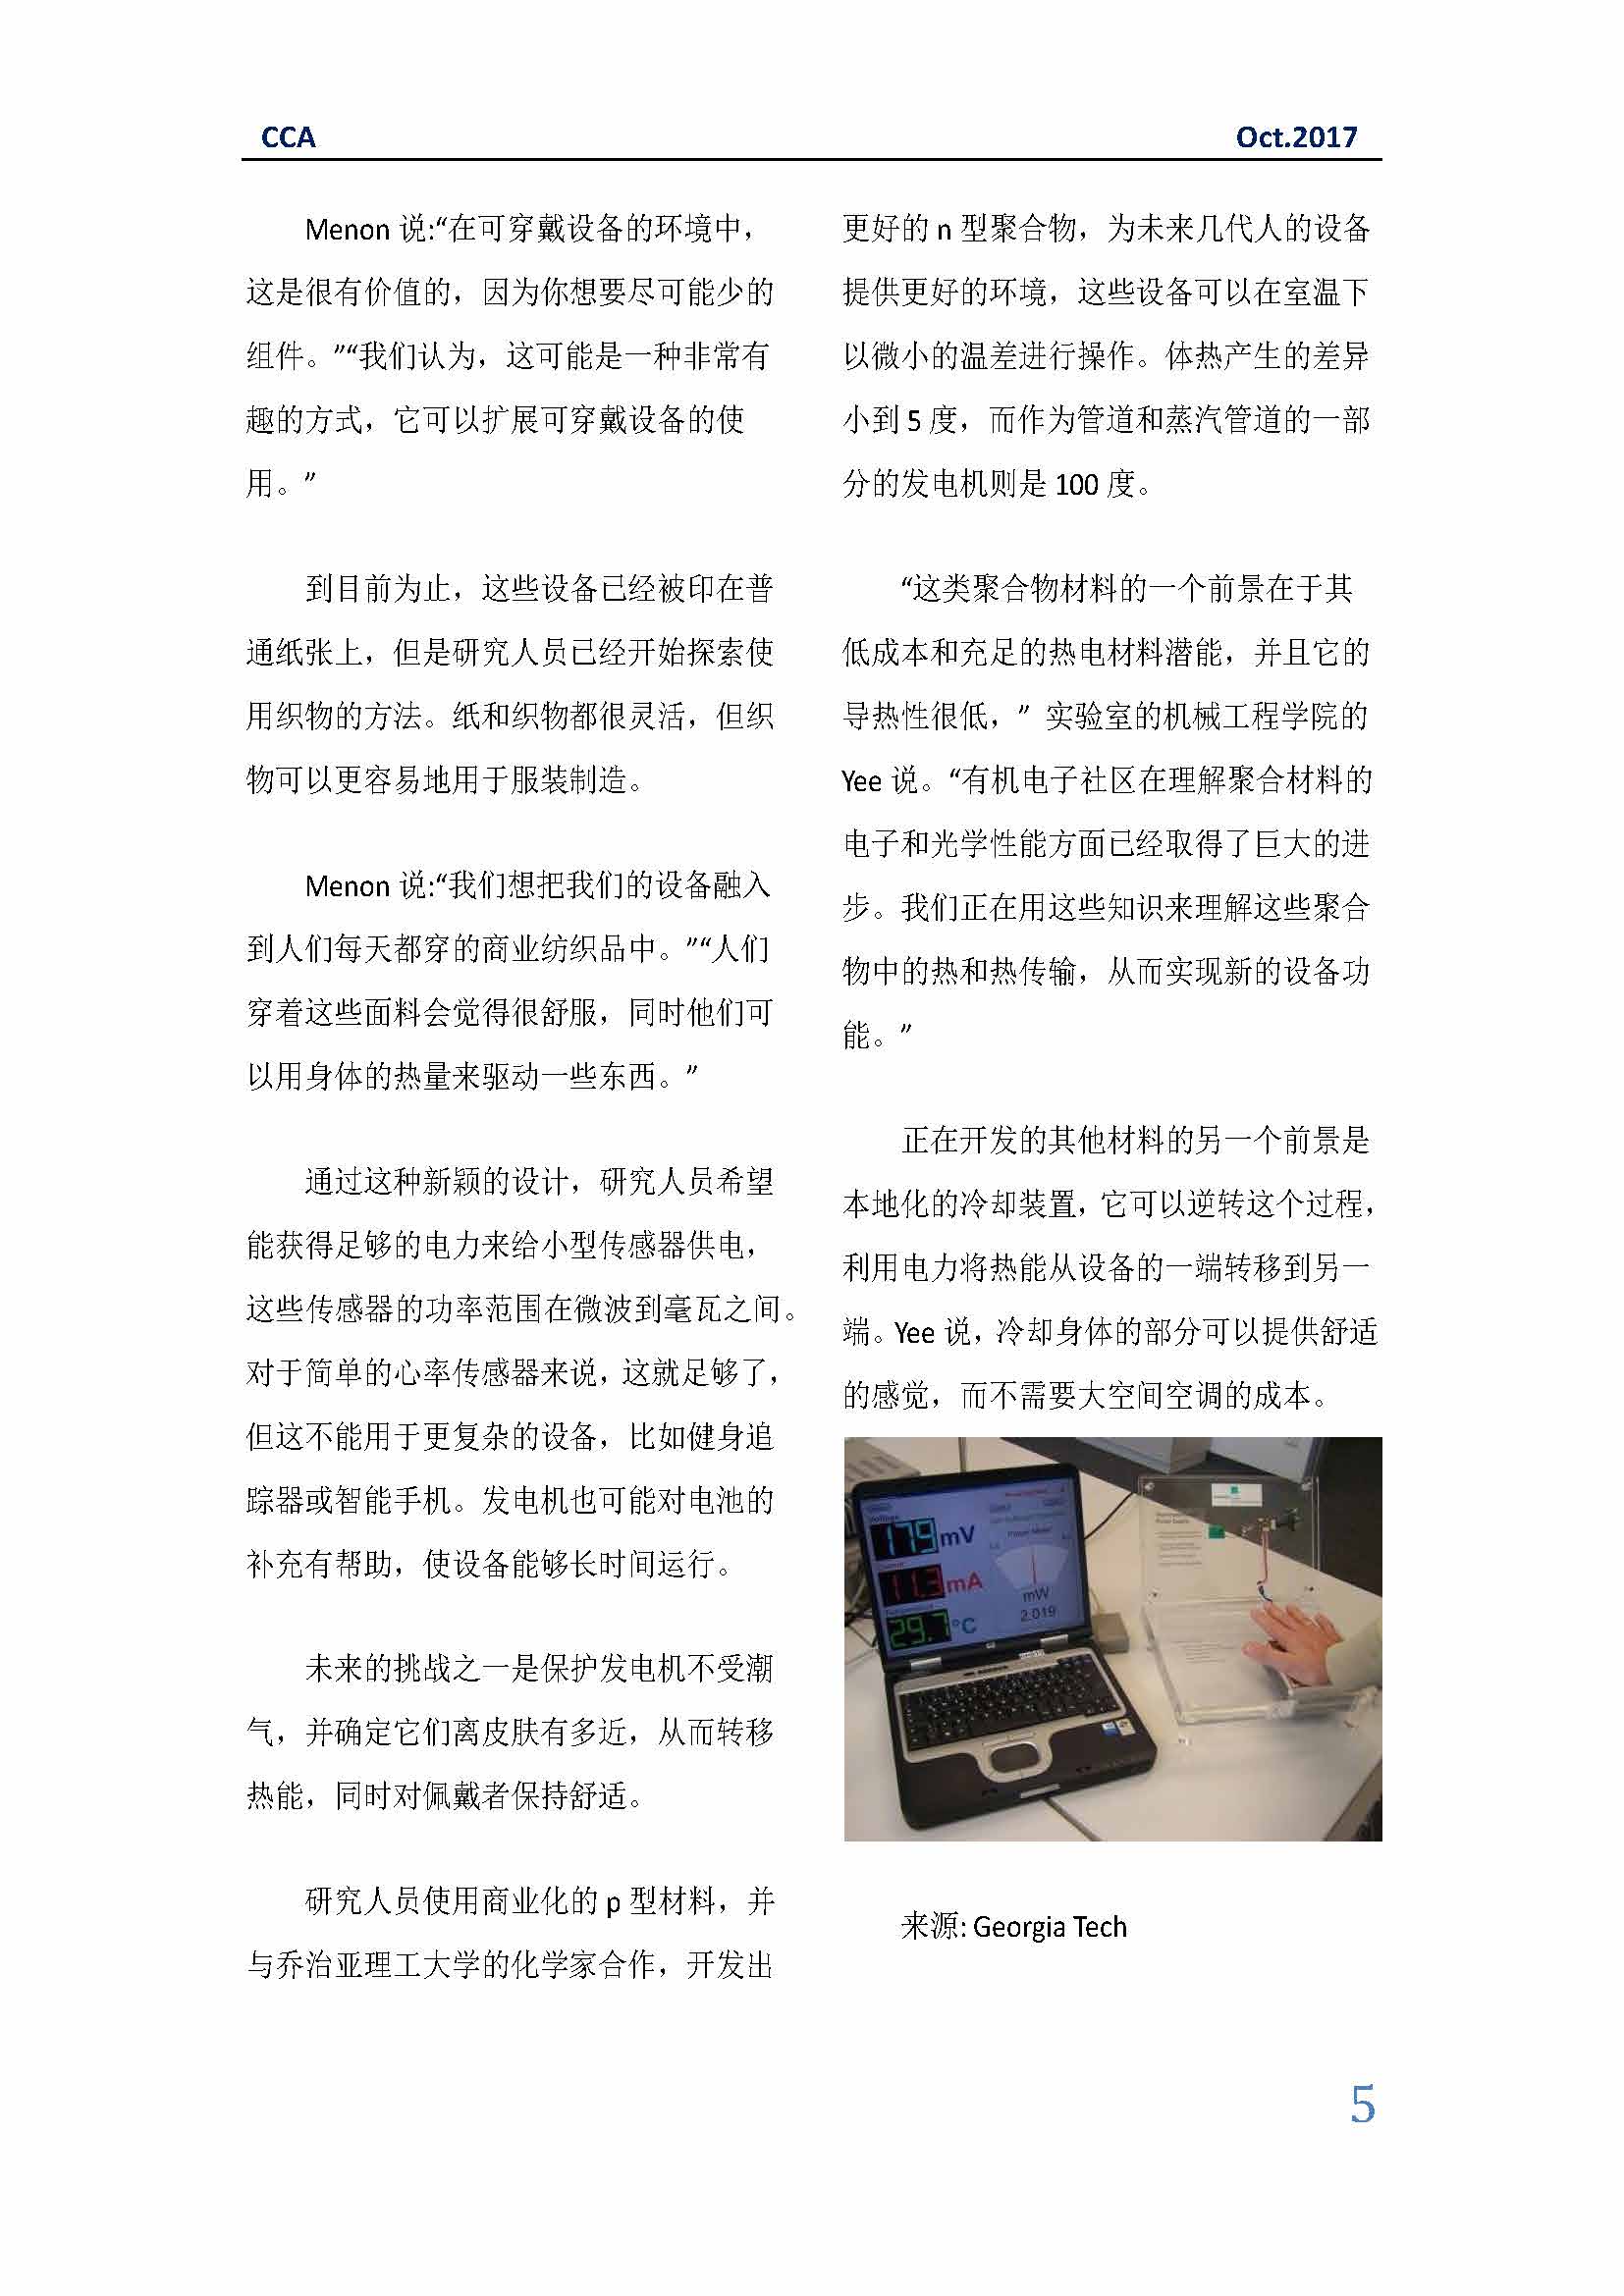 中国科技咨询协会国际快讯（第三十期）_页面_05.jpg